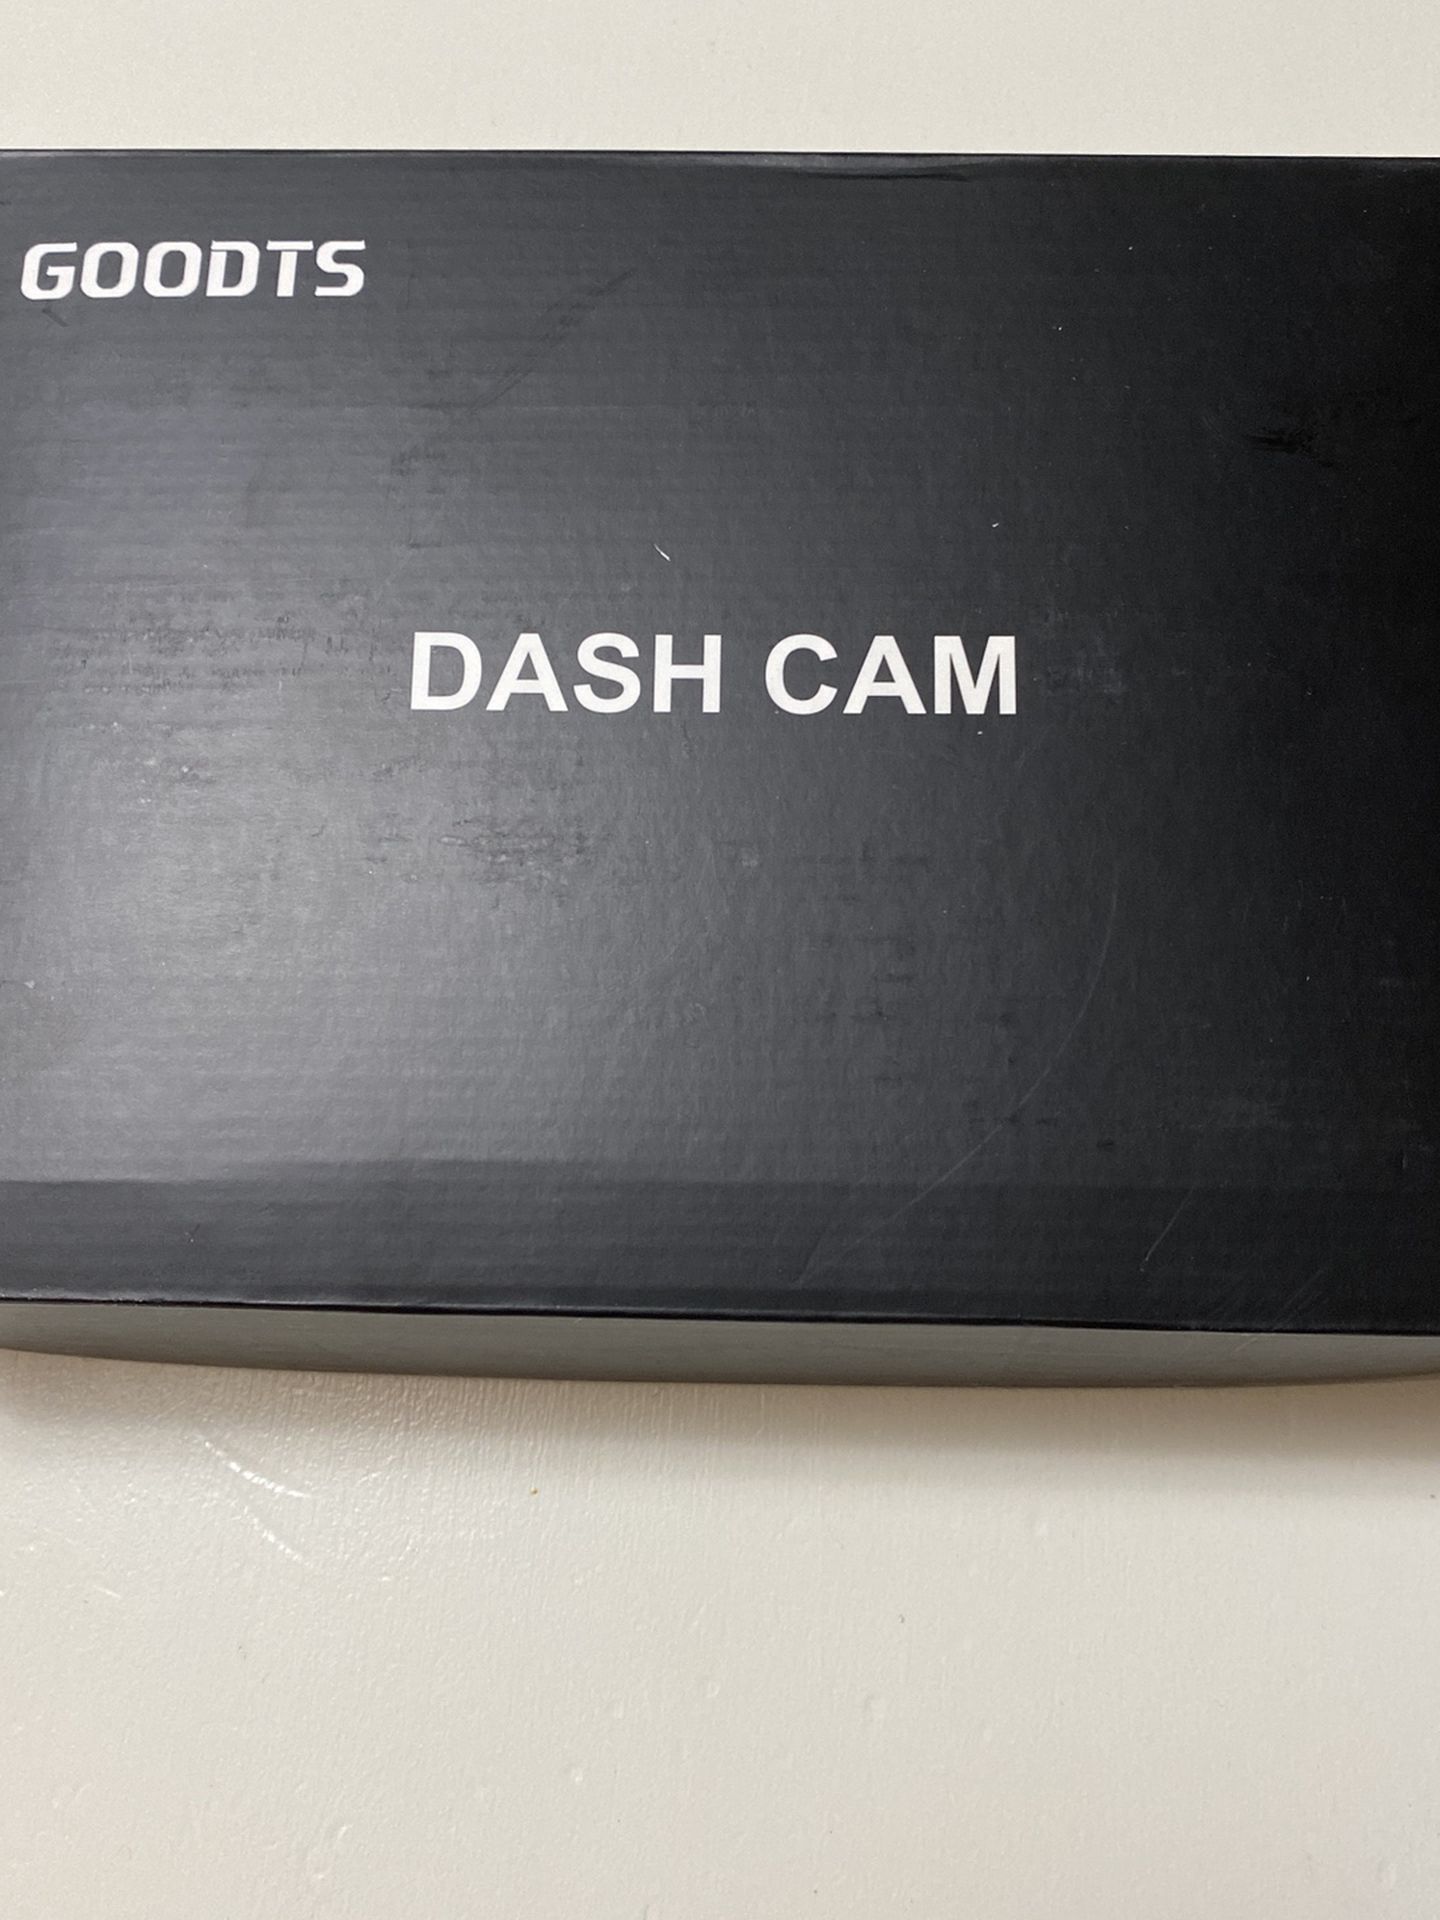 Dash Cam “Goodts”